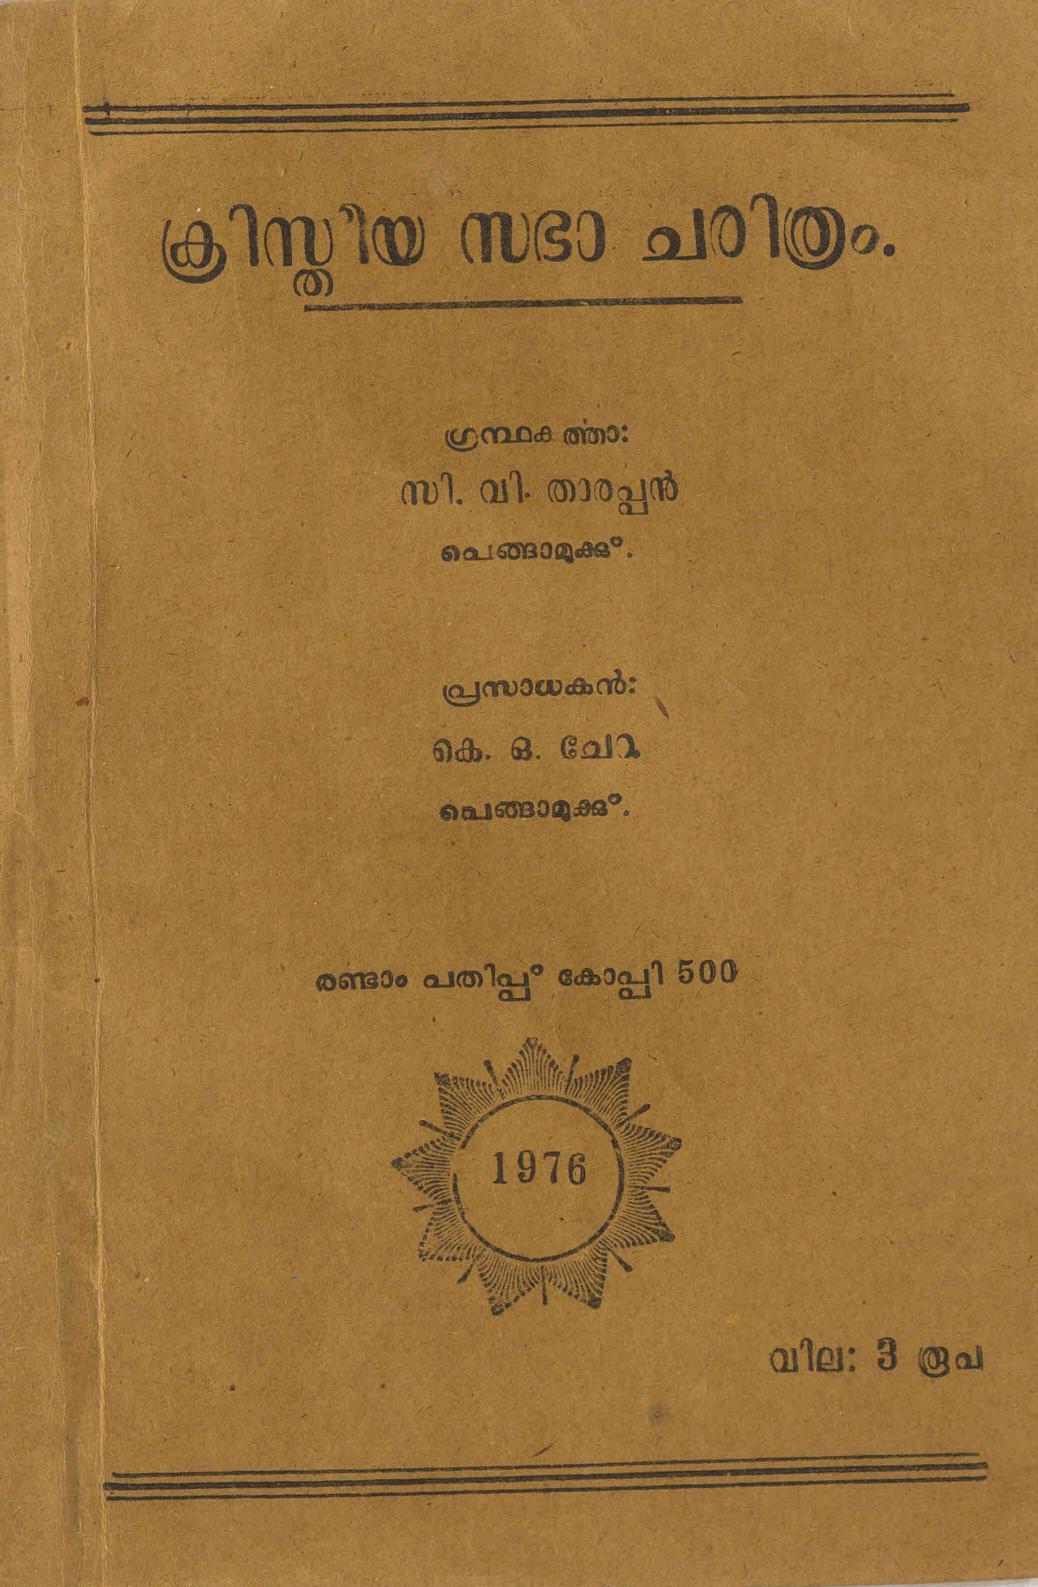 1976 - ക്രിസ്തീയ സഭാ ചരിത്രം - സി. വി. താരപ്പൻ